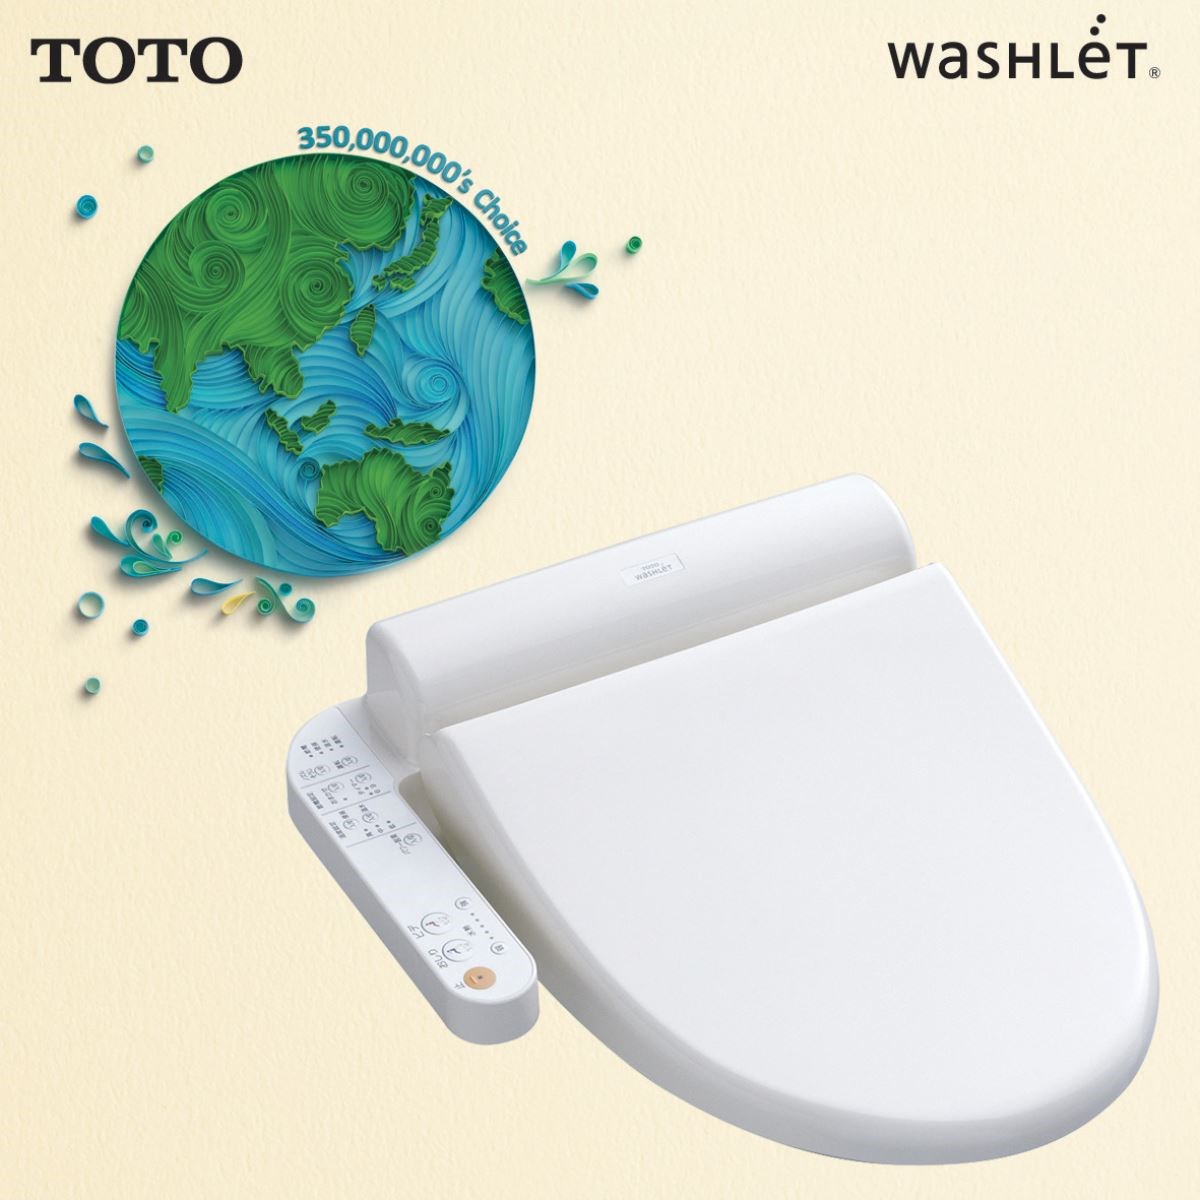 慶祝Washlet 全球熱銷3,500 萬台TOTO溫水洗淨便座全面感恩回饋!－設計